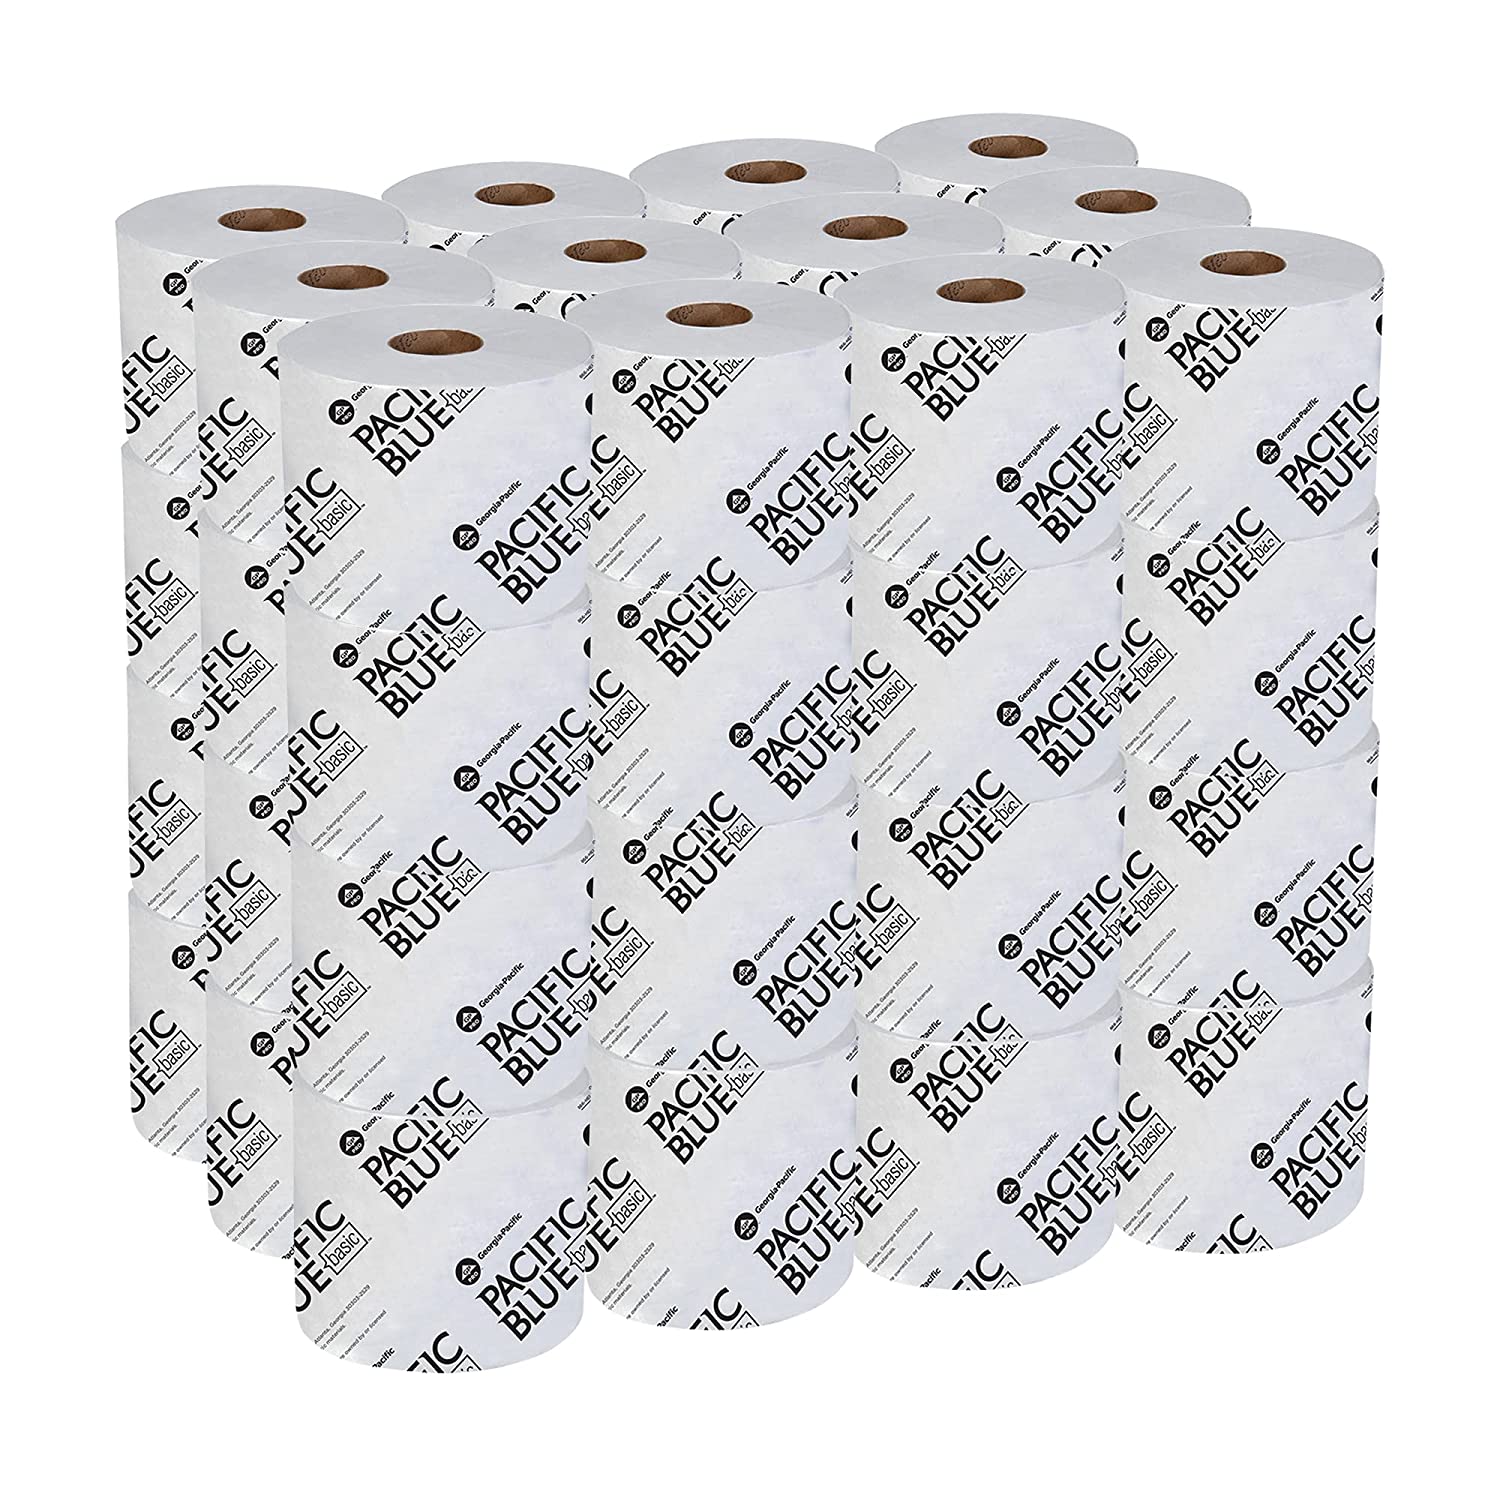 Georgia Pacific Envision High-Capacity Standard Bath Tissue 1-Ply White 1500-roll 48-carton